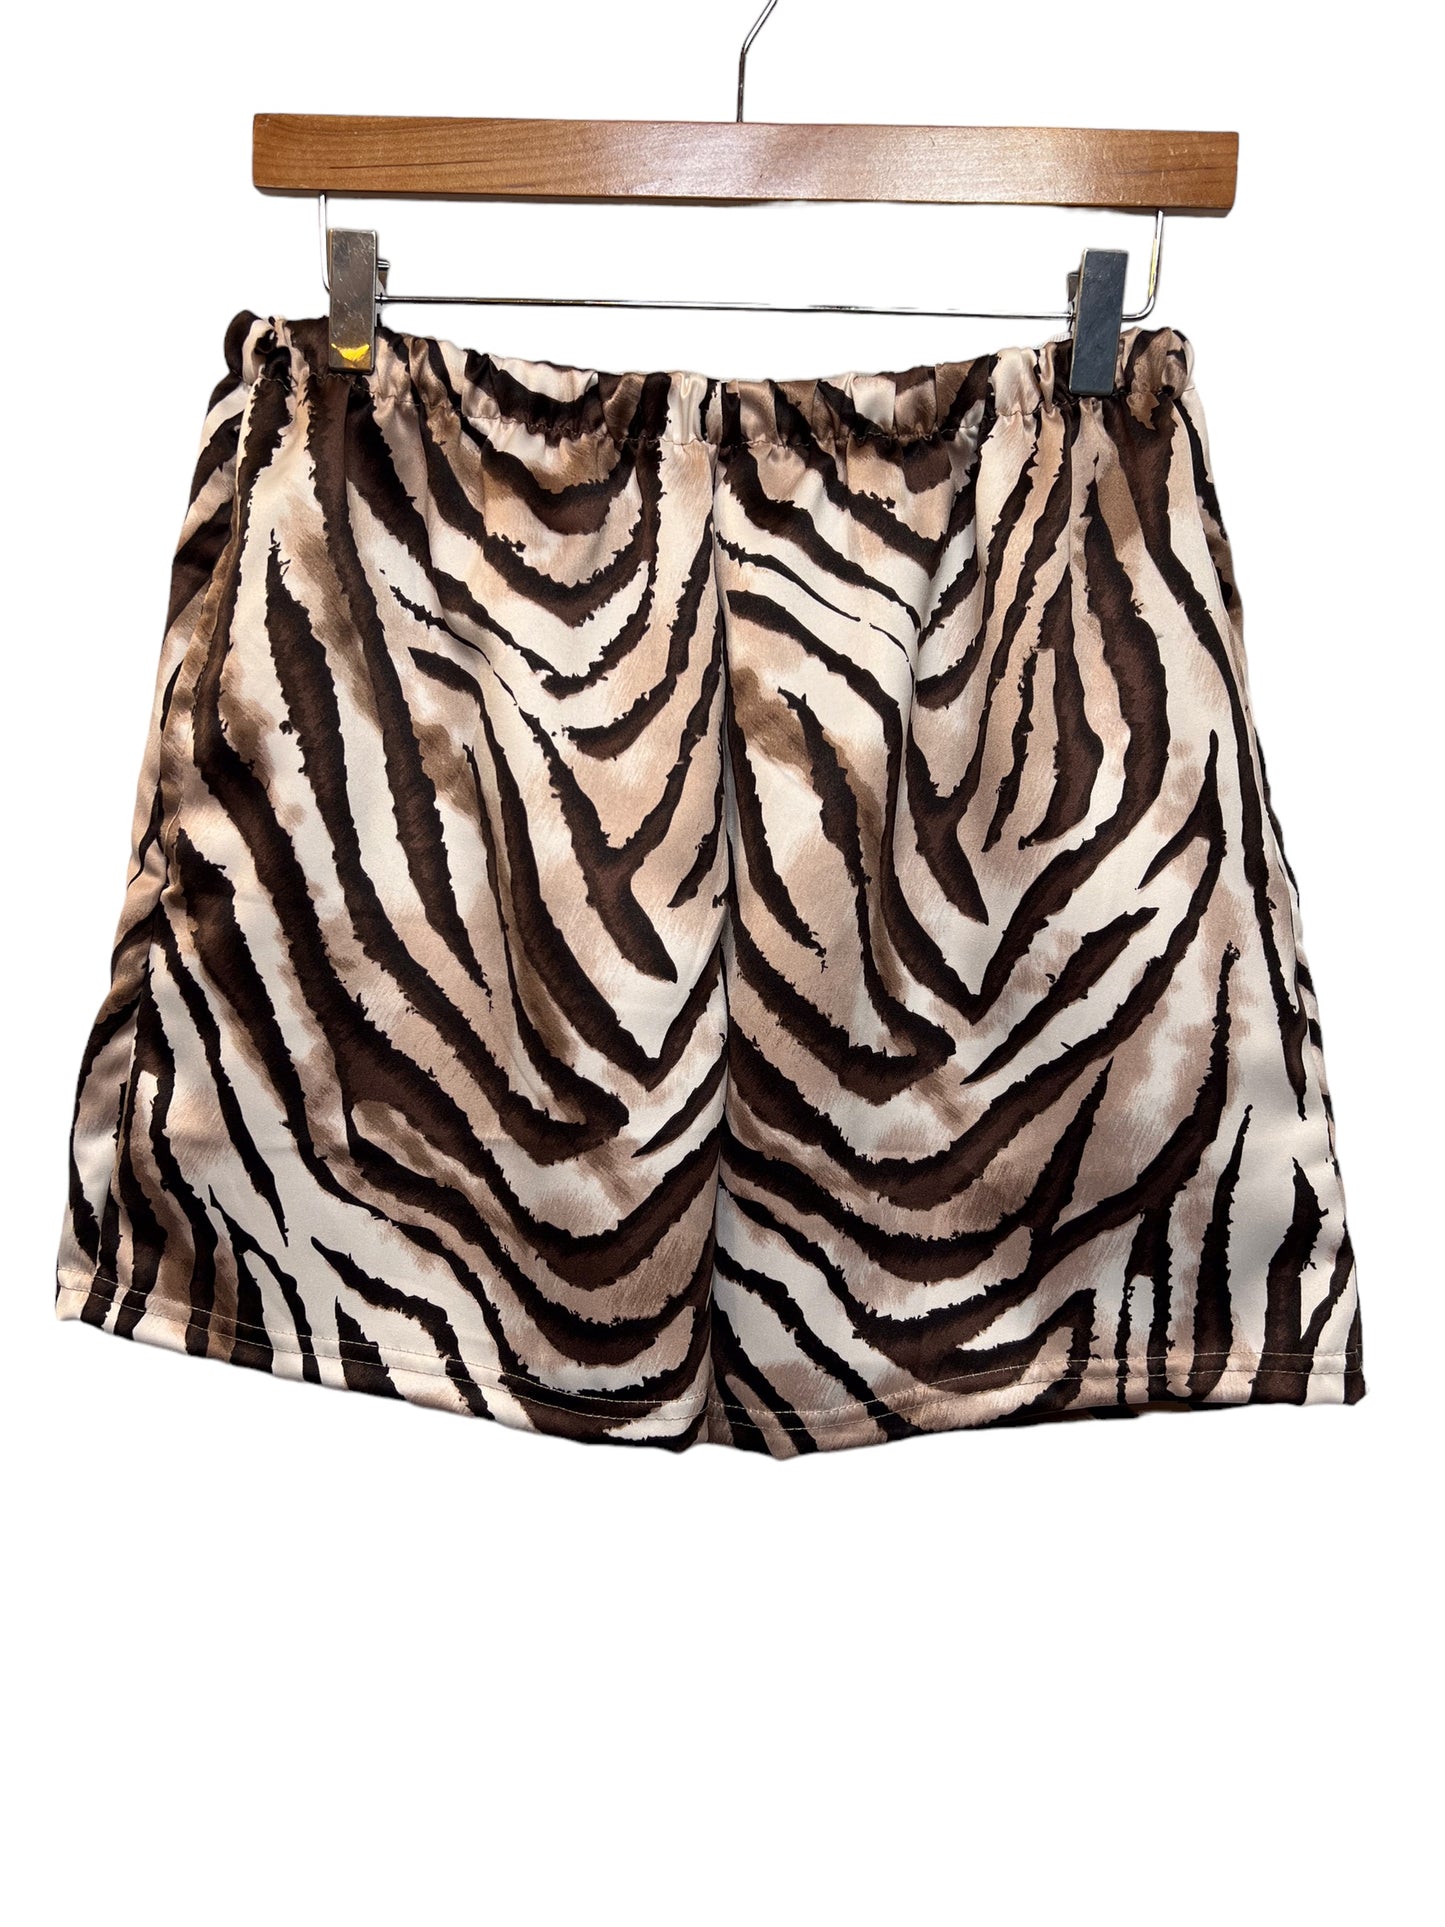 Unisex Zebra Patterned Shorts (Size XS)